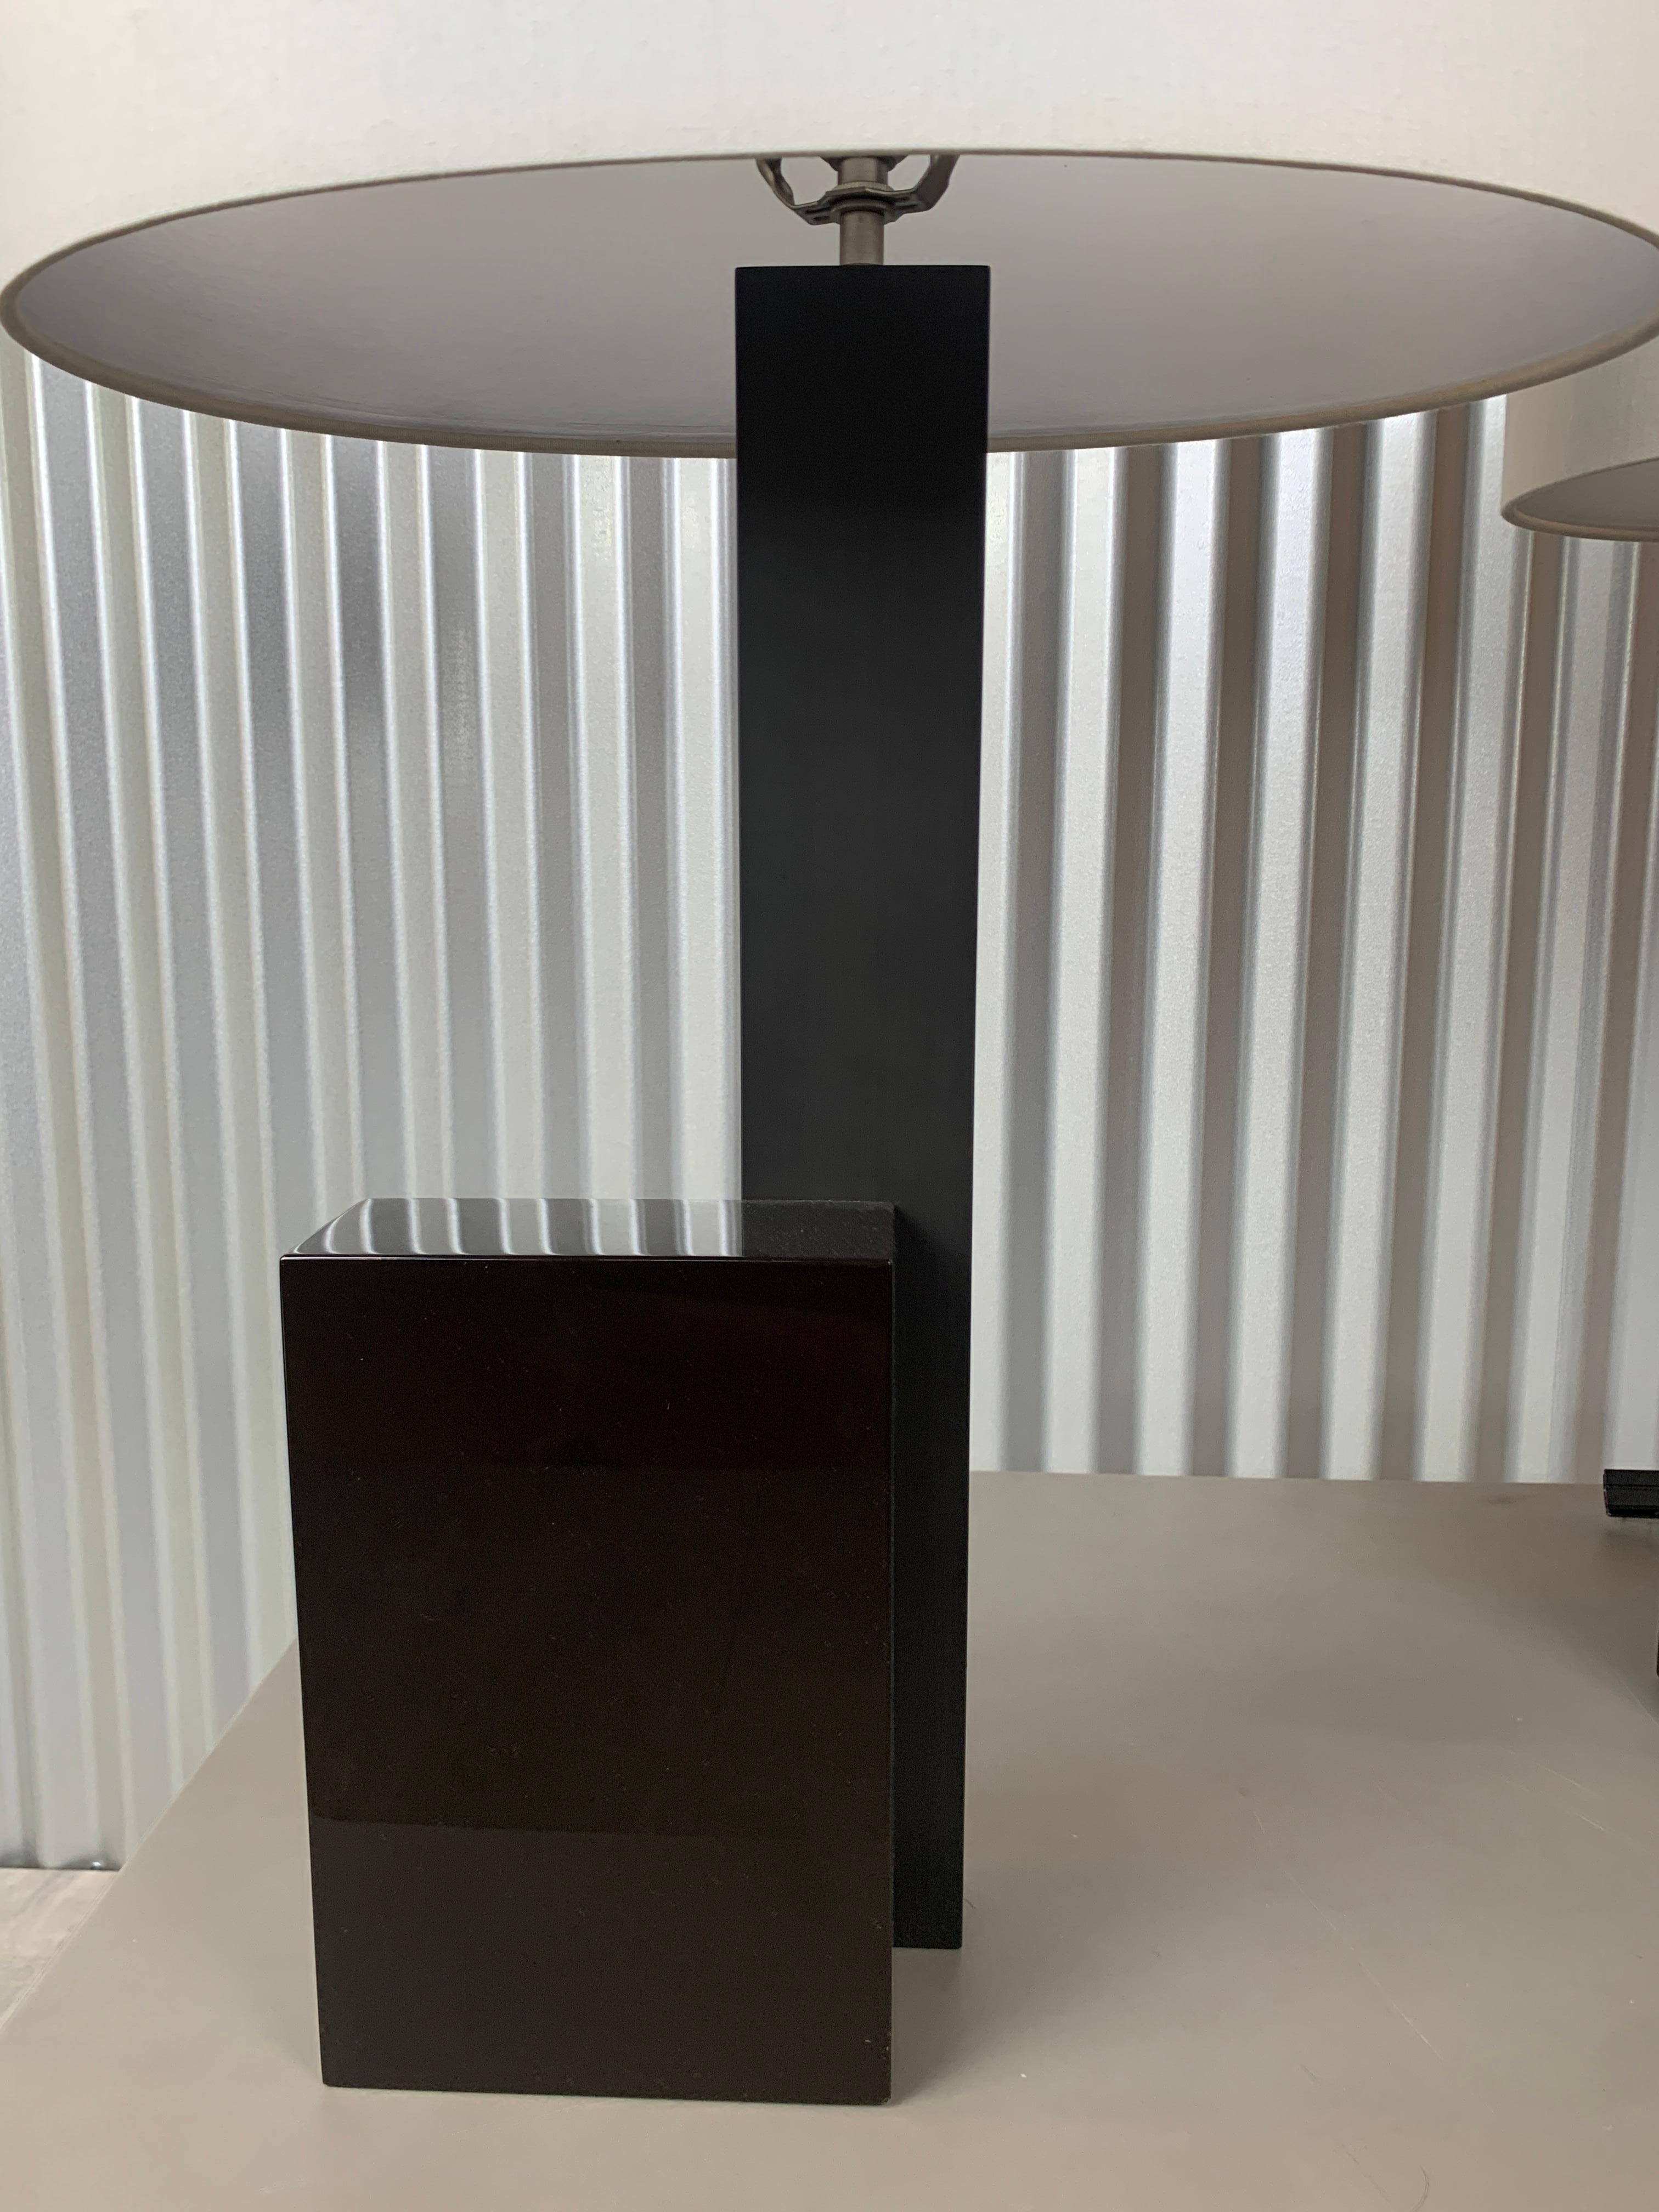 Deux lampes de table abstraction sur mesure par Herve Langais. Base en laque gris foncé et manche en acier noirci. 

Acquis à l'origine auprès de la Galerie Negropontes. 

30 